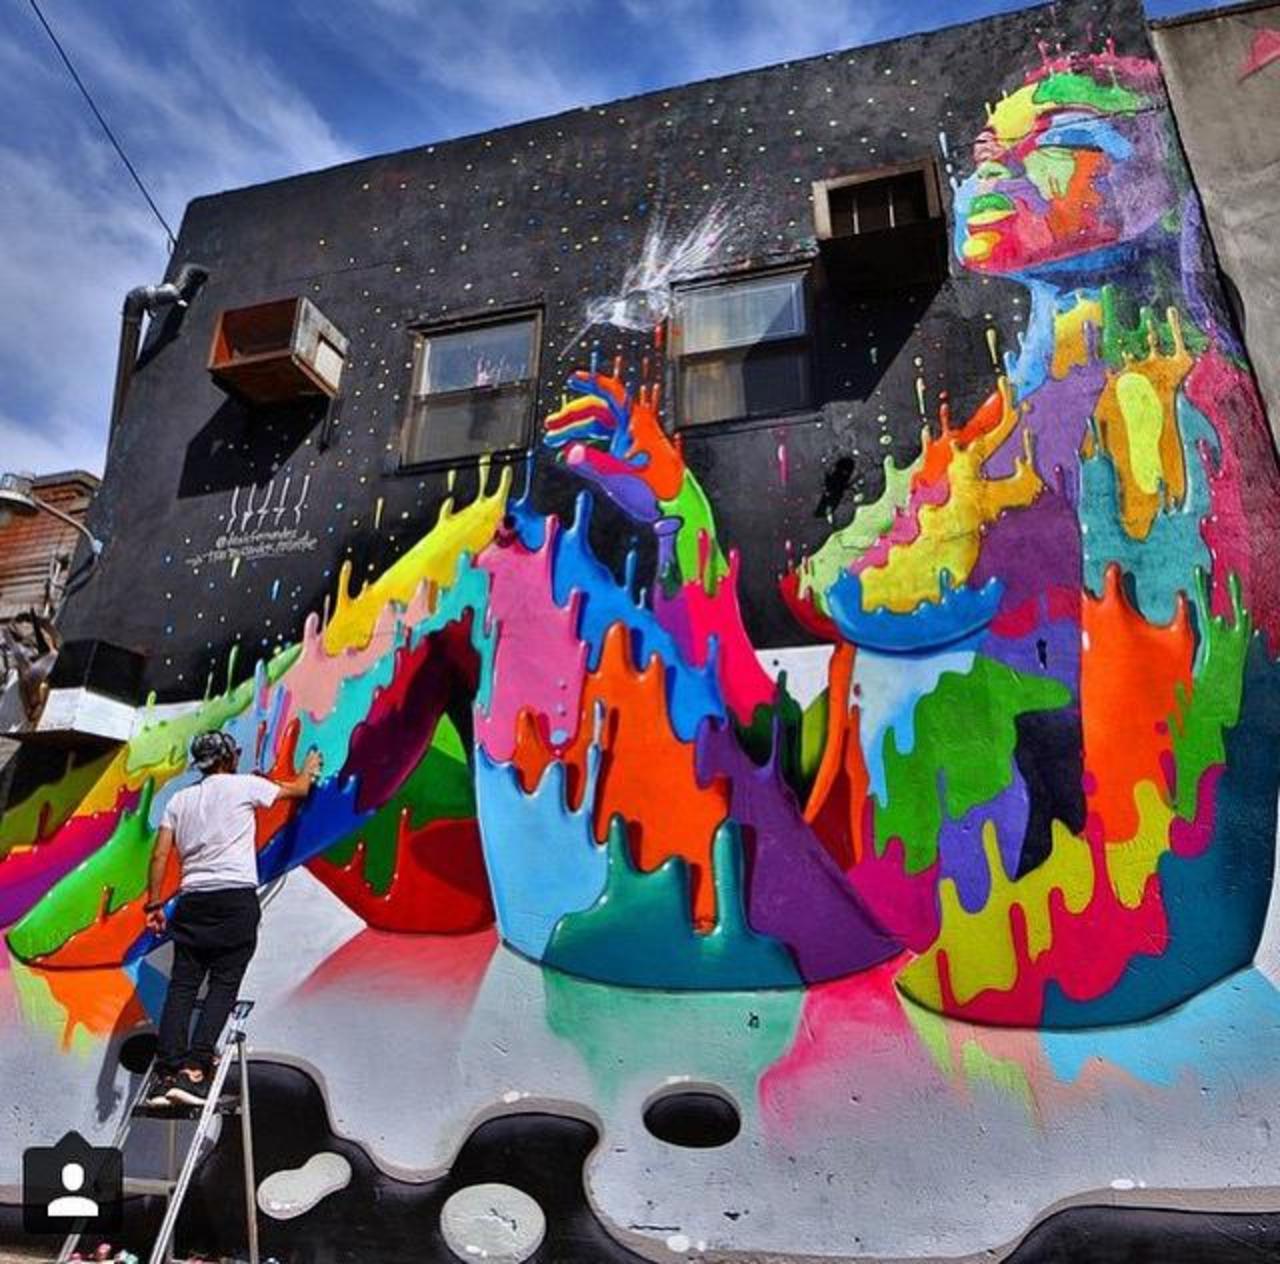 New Street Art by Dasic Fernandez for the TheBKcollective  

#art #arte #graffiti #streetart http://t.co/BpfOrowKhs